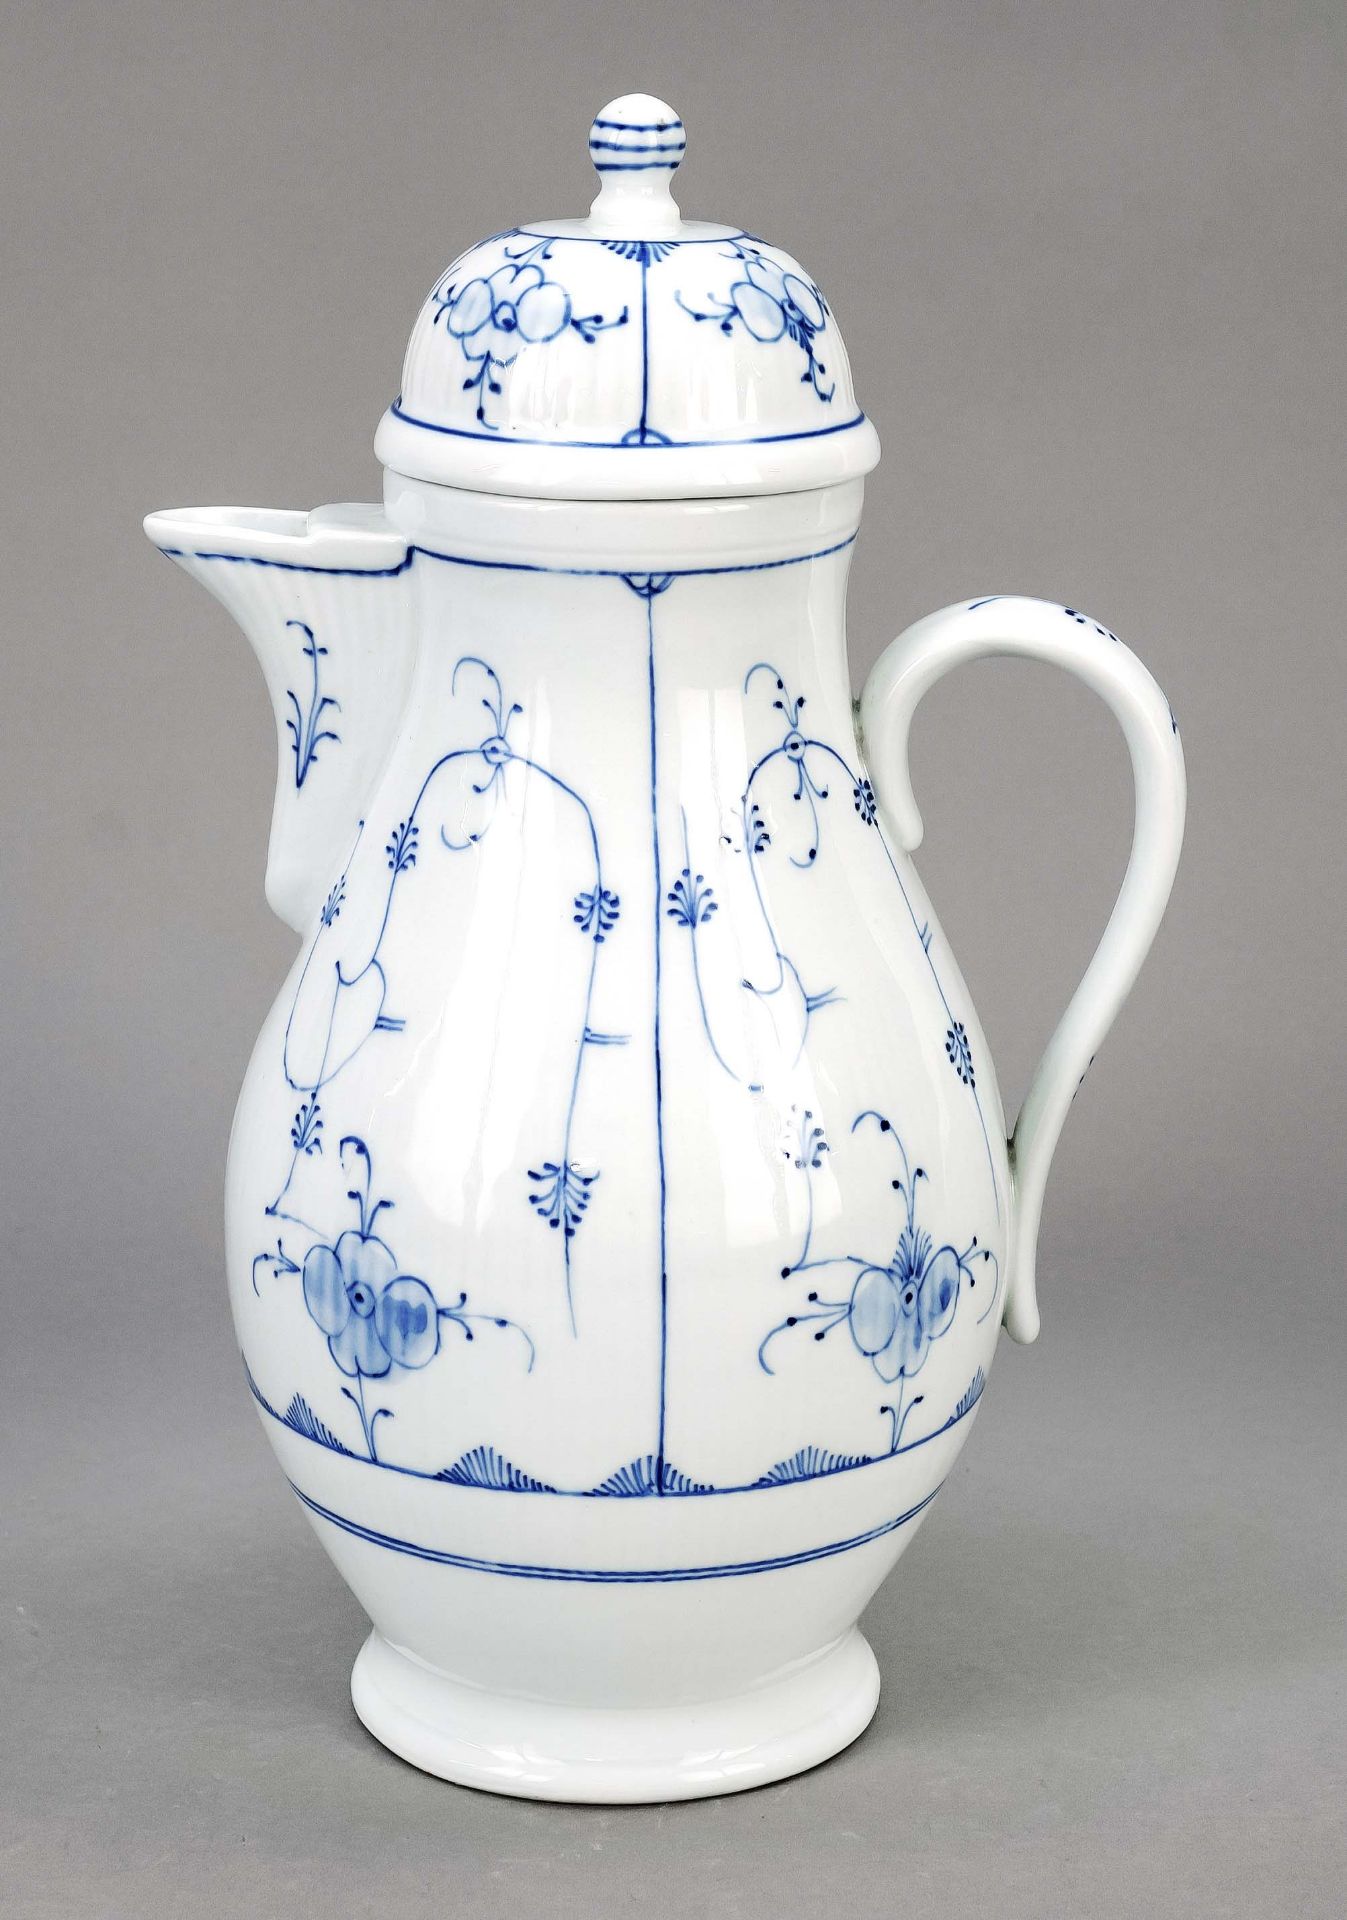 Coffee pot, Friedrich Christian Greiner & Co., Rauenstein, mark 1894-1929, straw pattern in